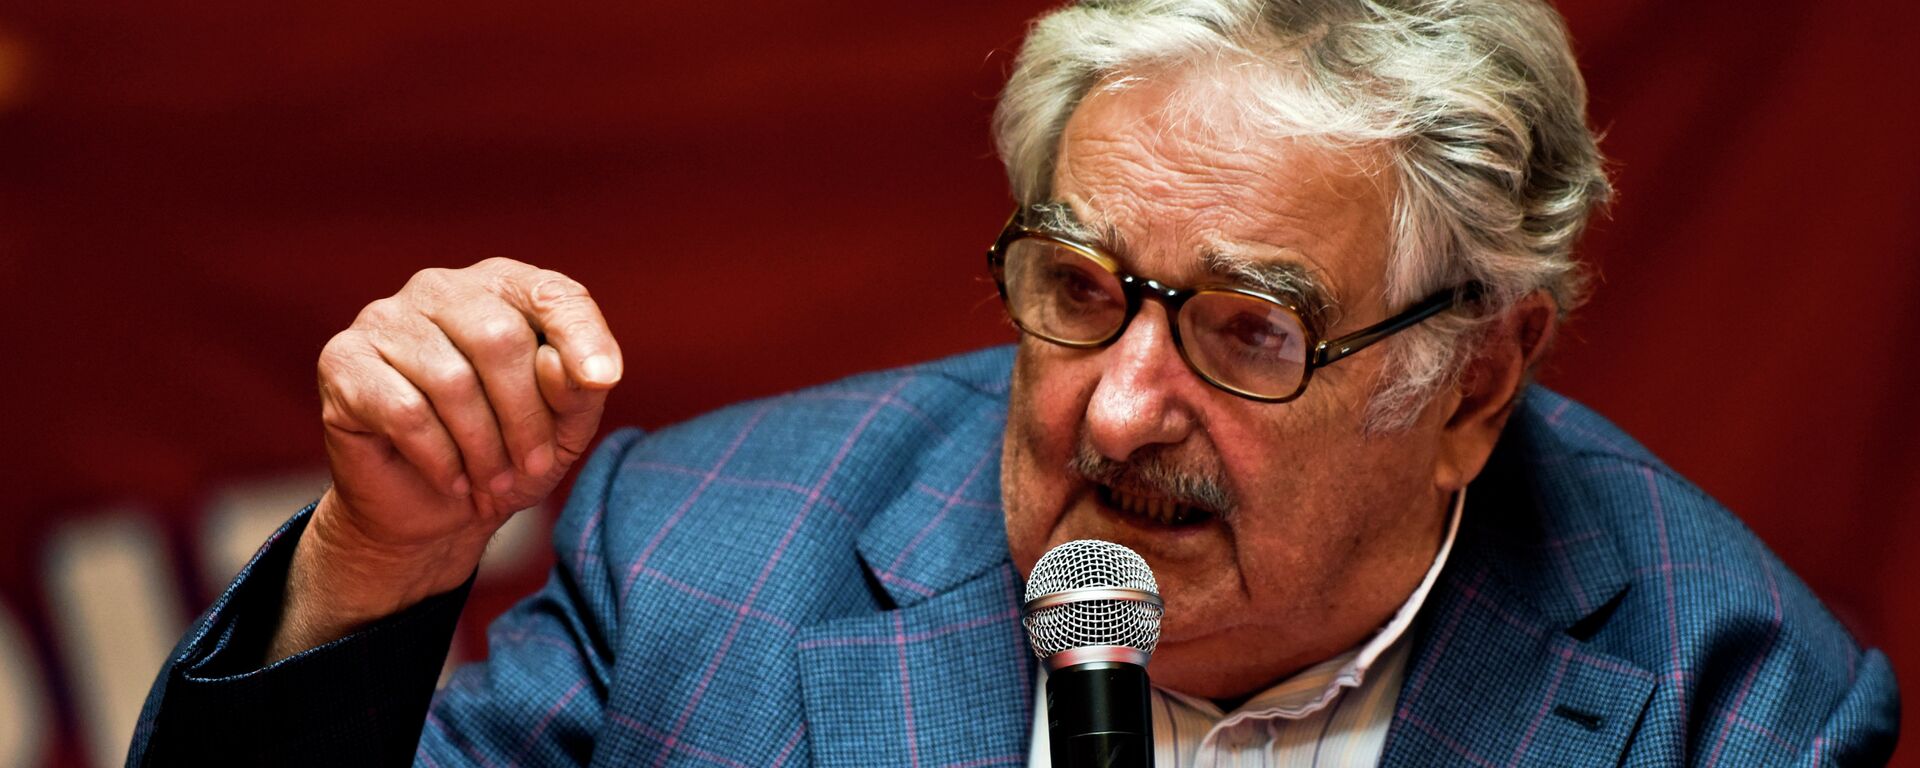 José Mujica, expresidente de Uruguay - Sputnik Mundo, 1920, 14.05.2021